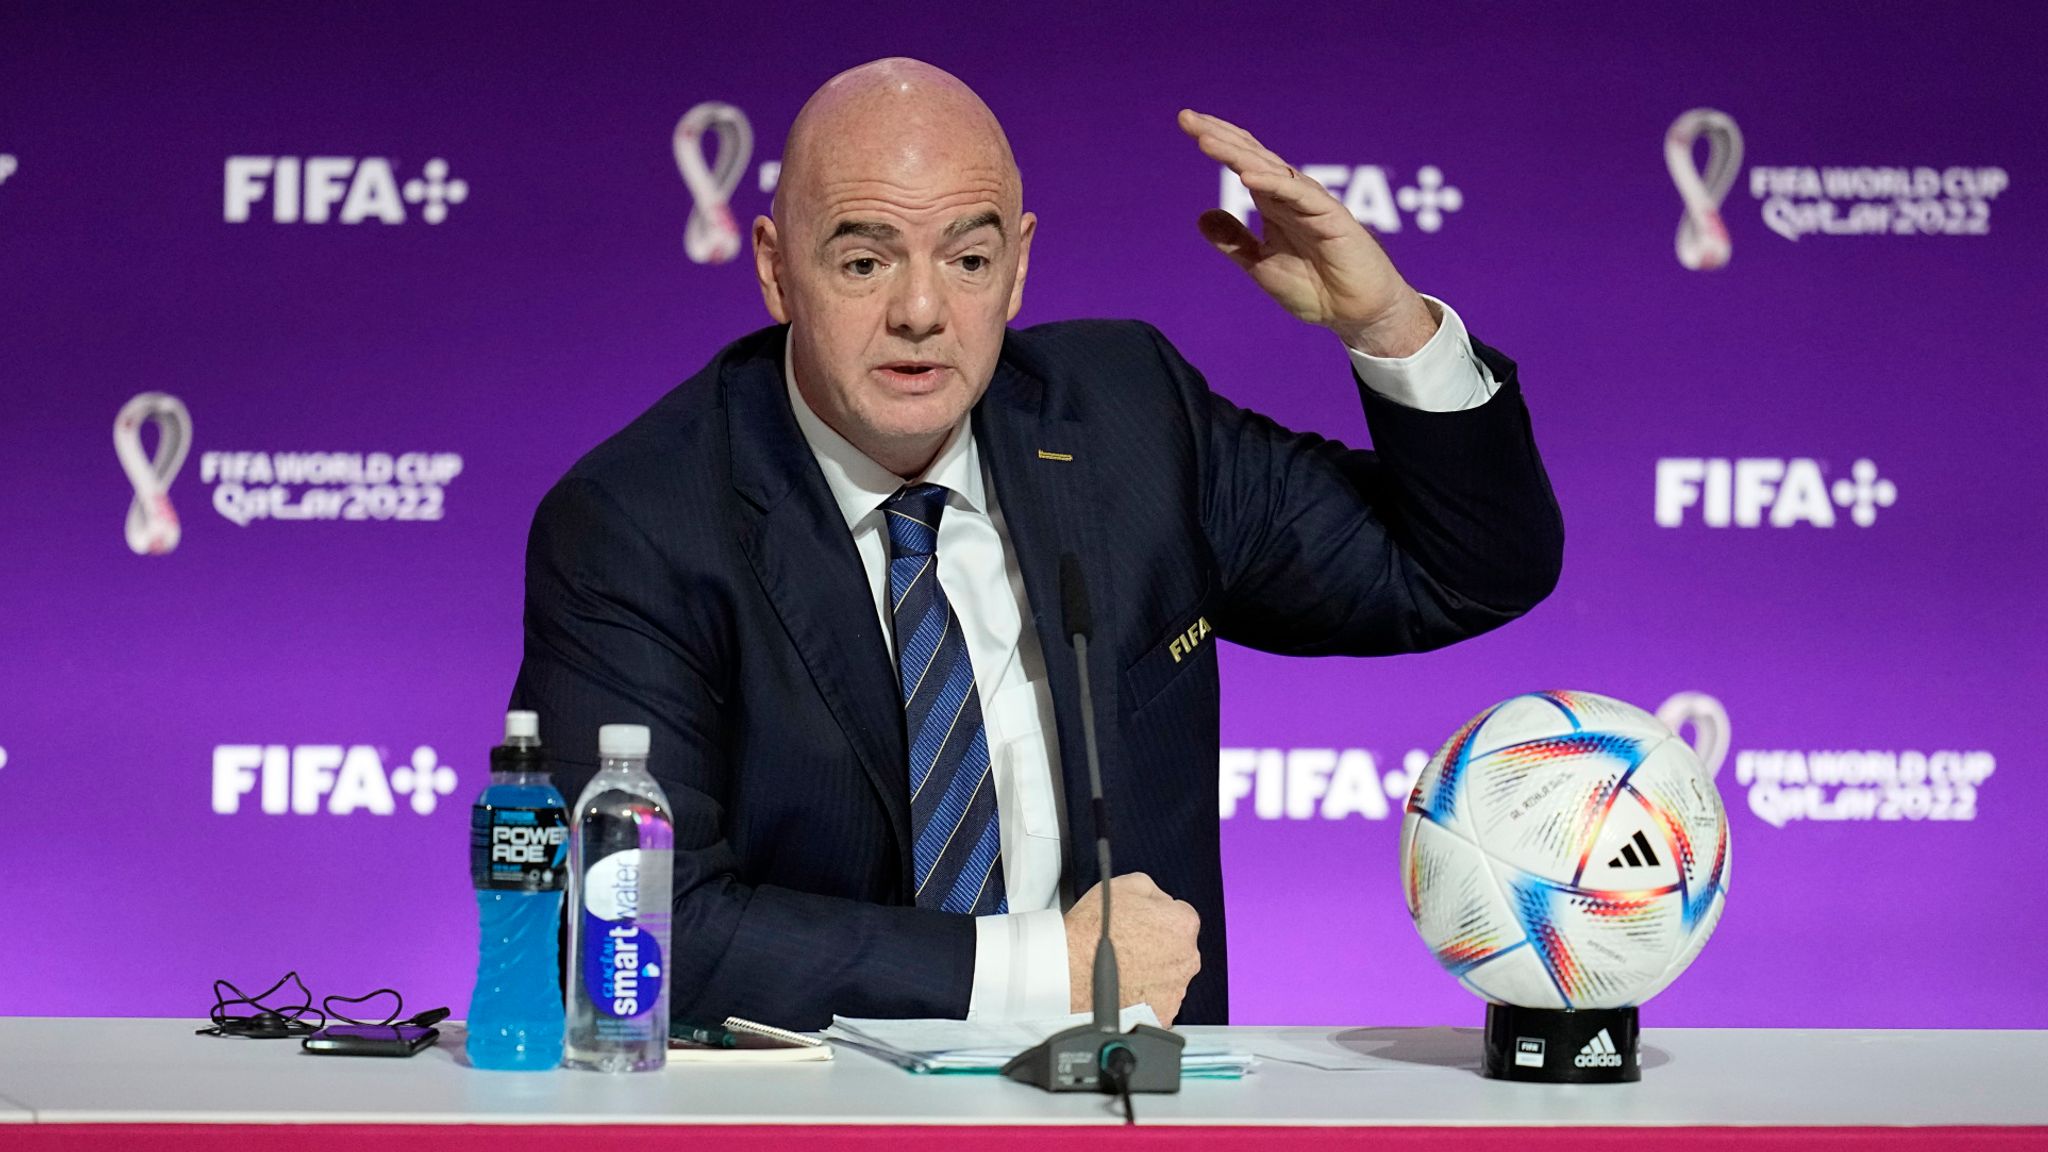 SIS News - Introducing: La'eeb - the #FIFAWorldCup Qatar 2022